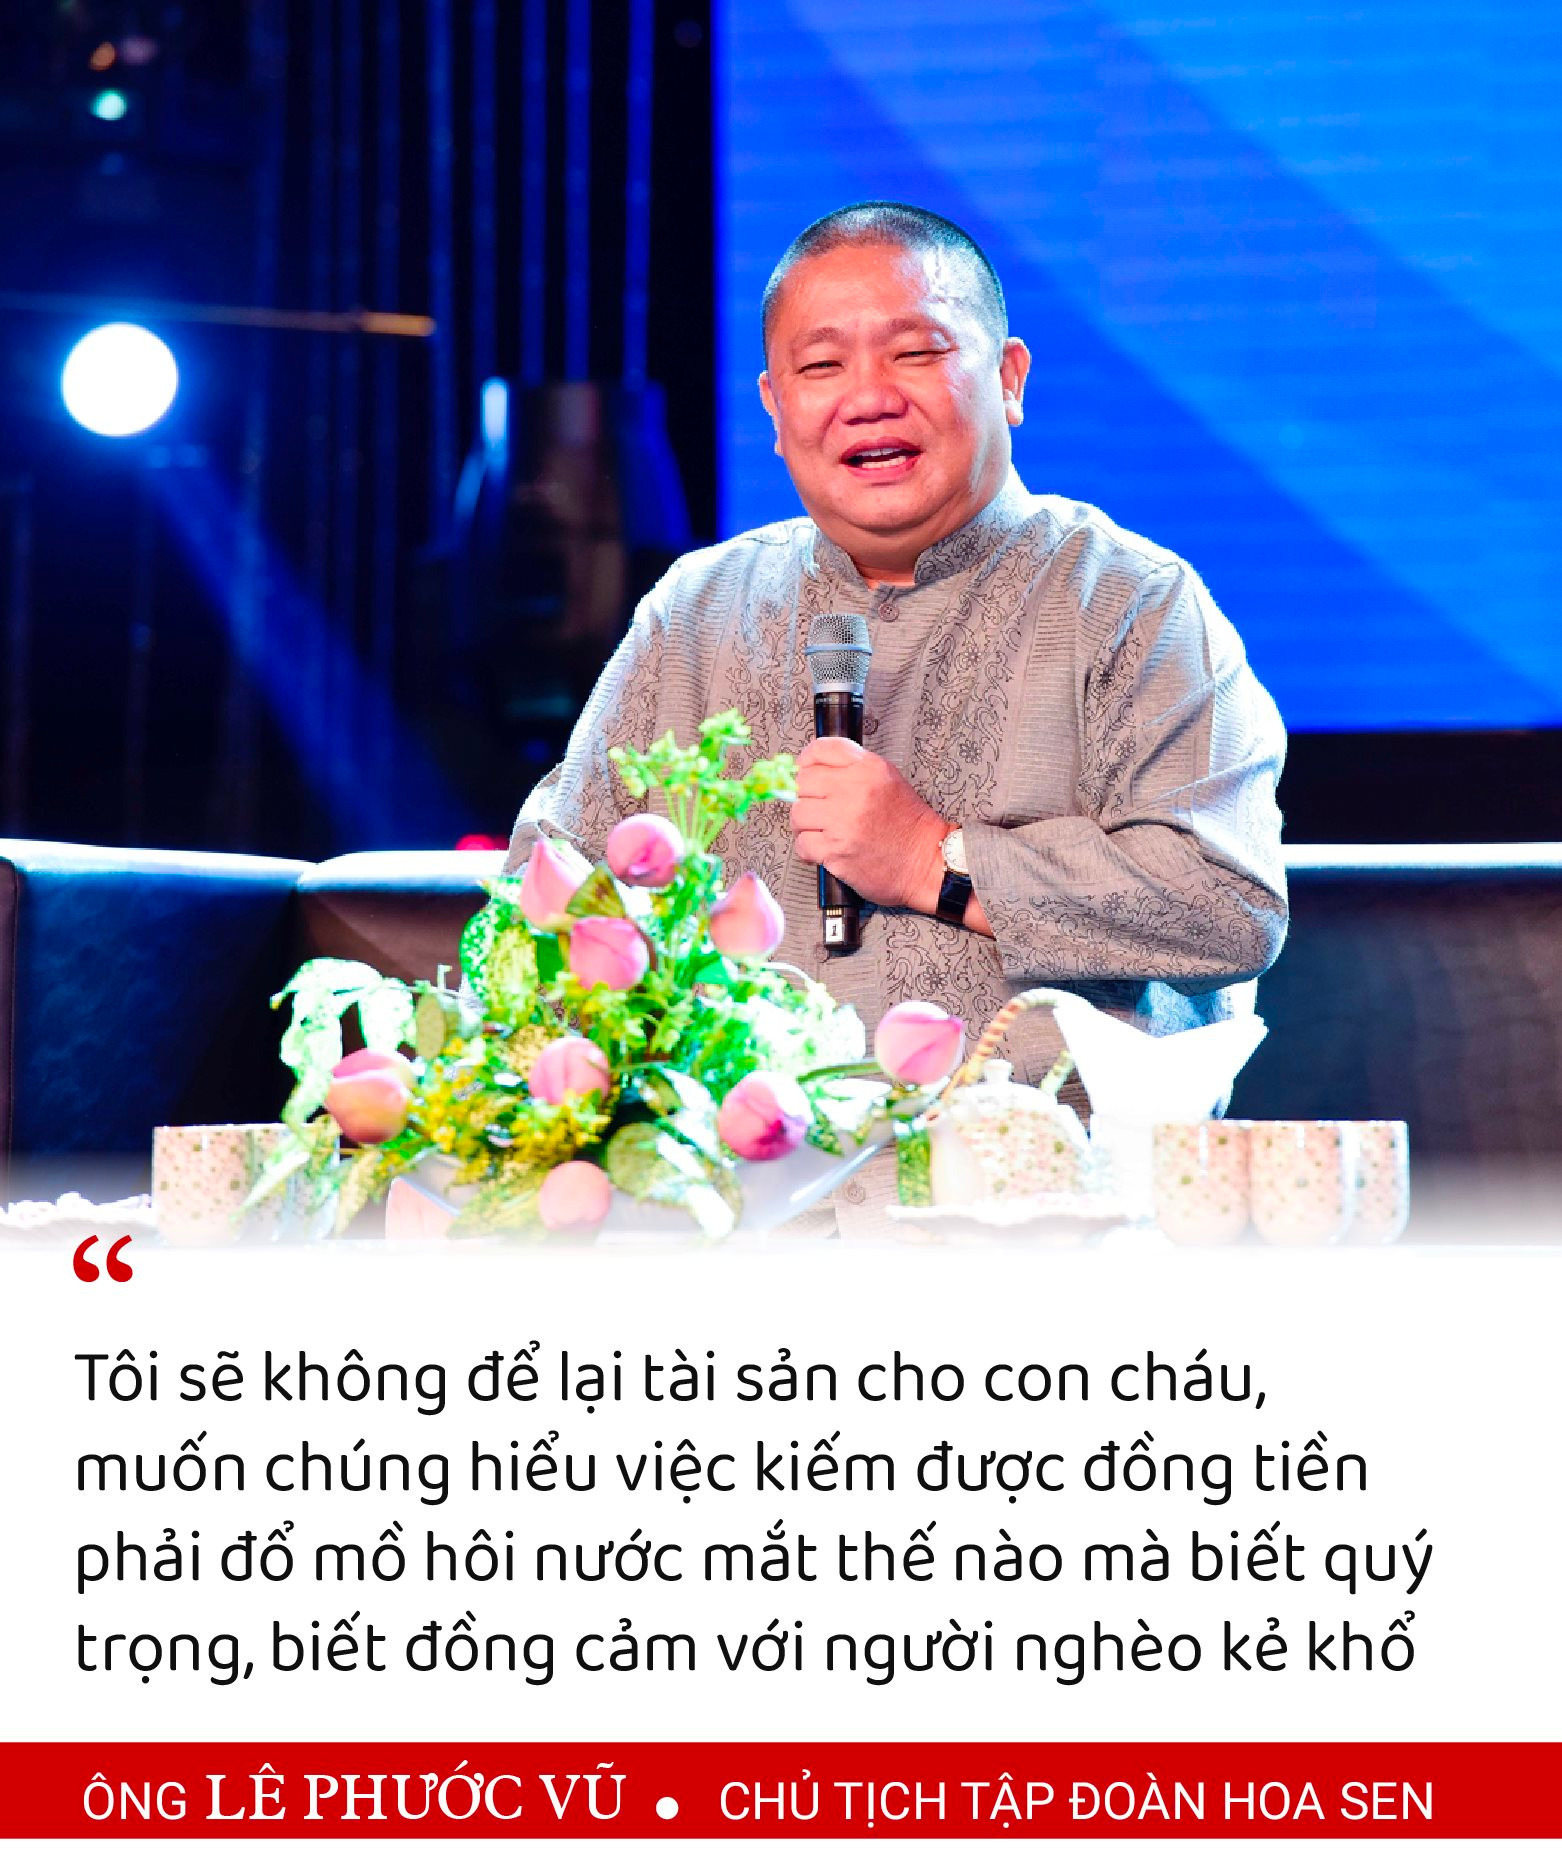 Những câu nói "bất hủ" của ông Lê Phước Vũ tại ĐHCĐ: "Tôi có được ngày hôm nay vì ba tôi nghèo, ba bạn tôi giàu quá, nó đâu chịu làm" - Ảnh 6.